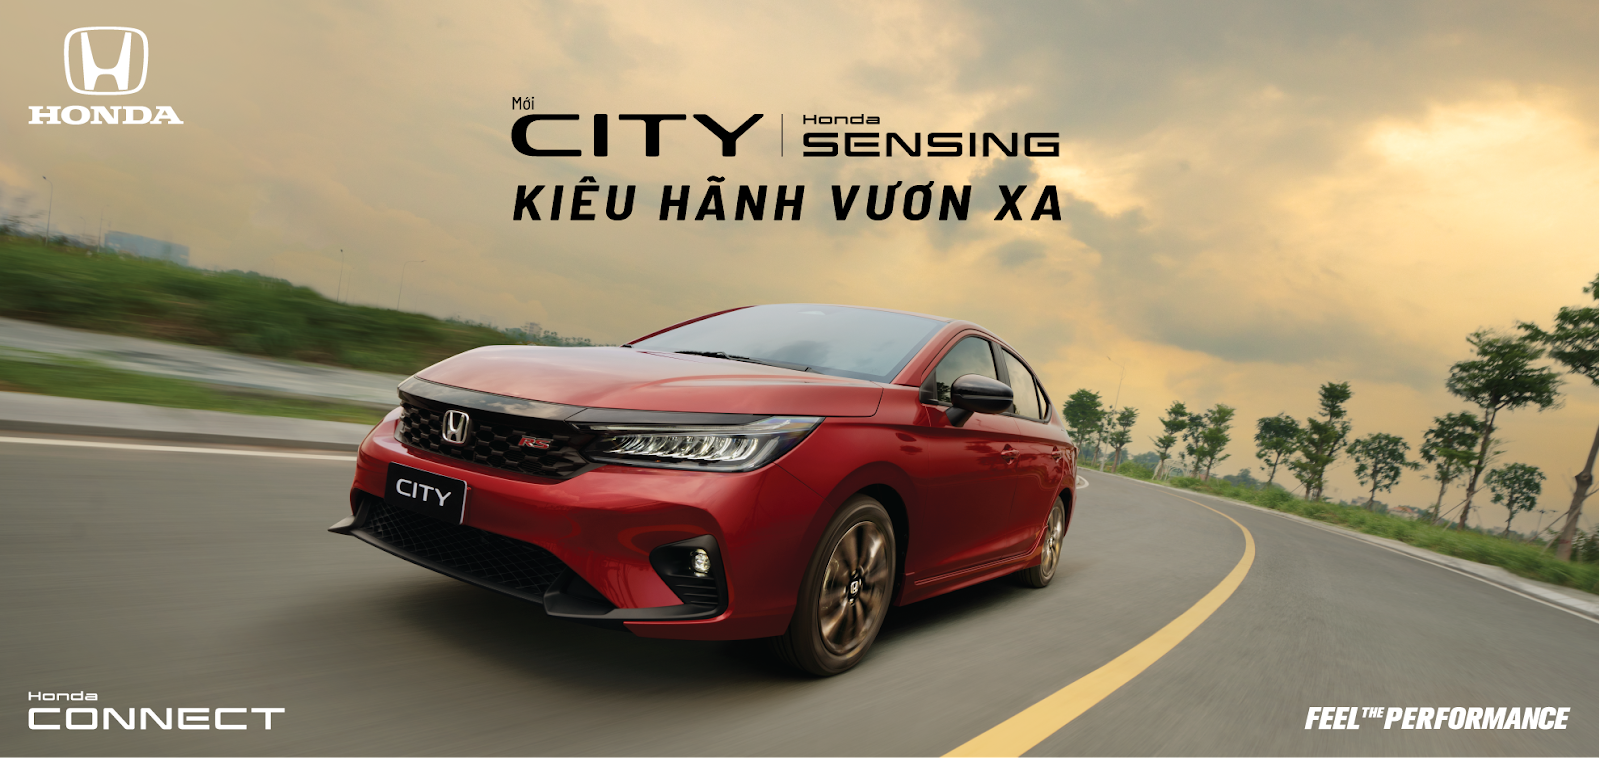 Cách âm chống ồn cho xe Honda City tại Hà Nội